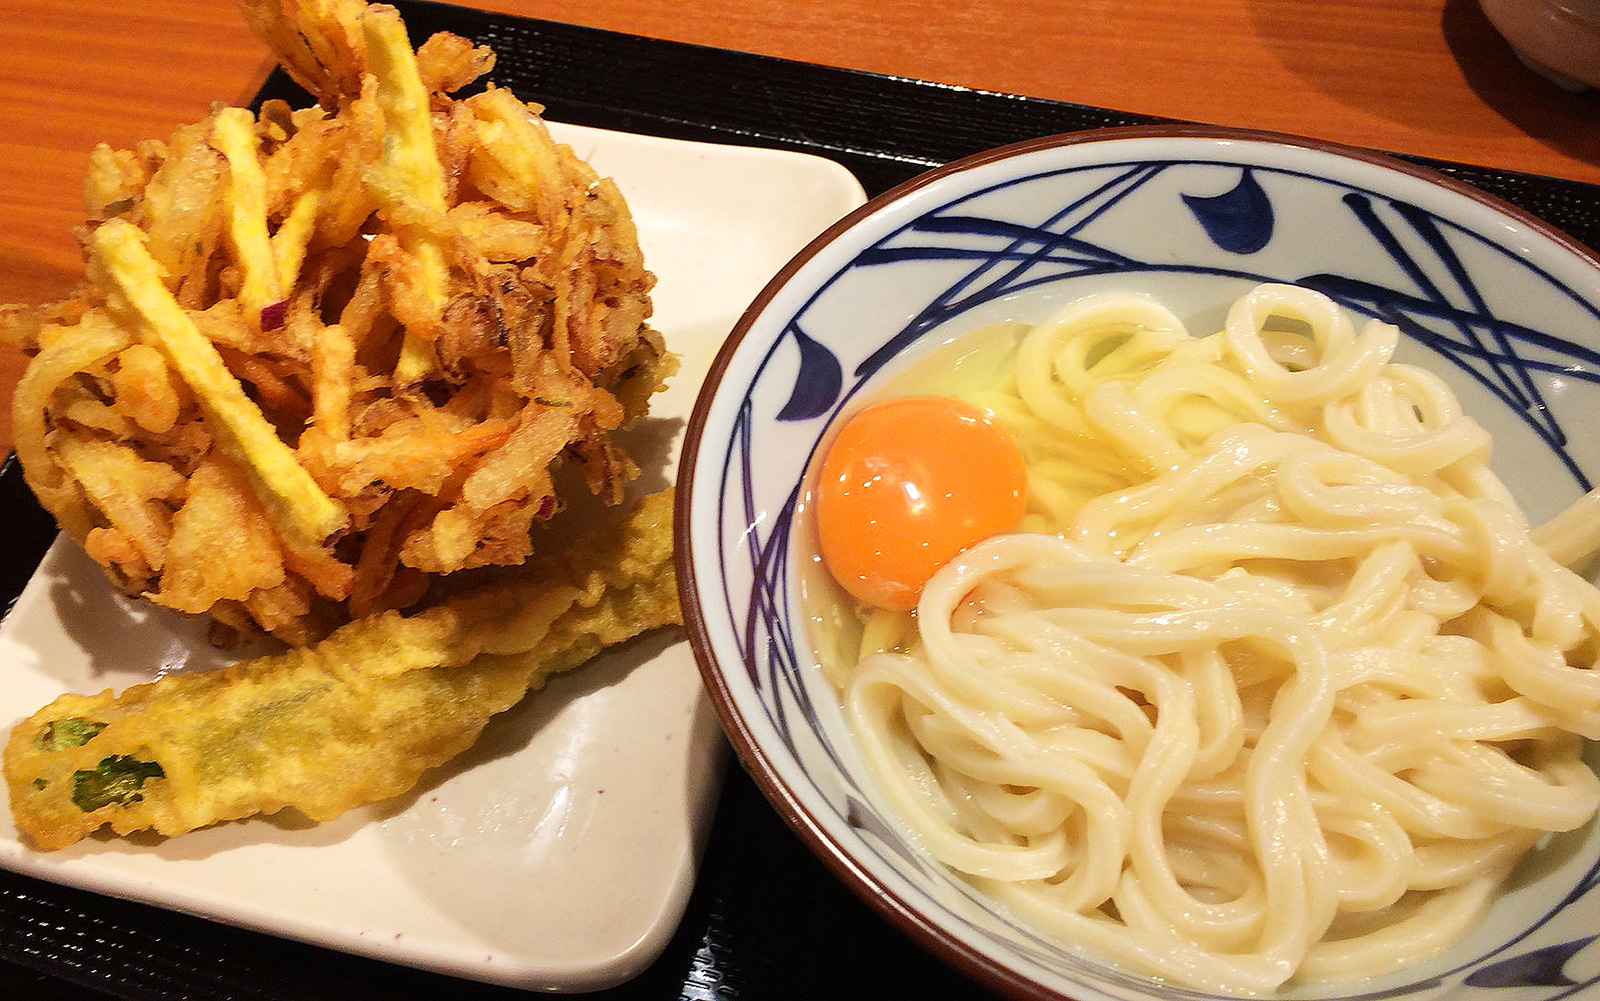 丸亀製麺 稲沢店 の釜玉うどんとかき揚げ 稲沢 ひとりめし食います 名古屋のお値打ちなランチを紹介するブログ